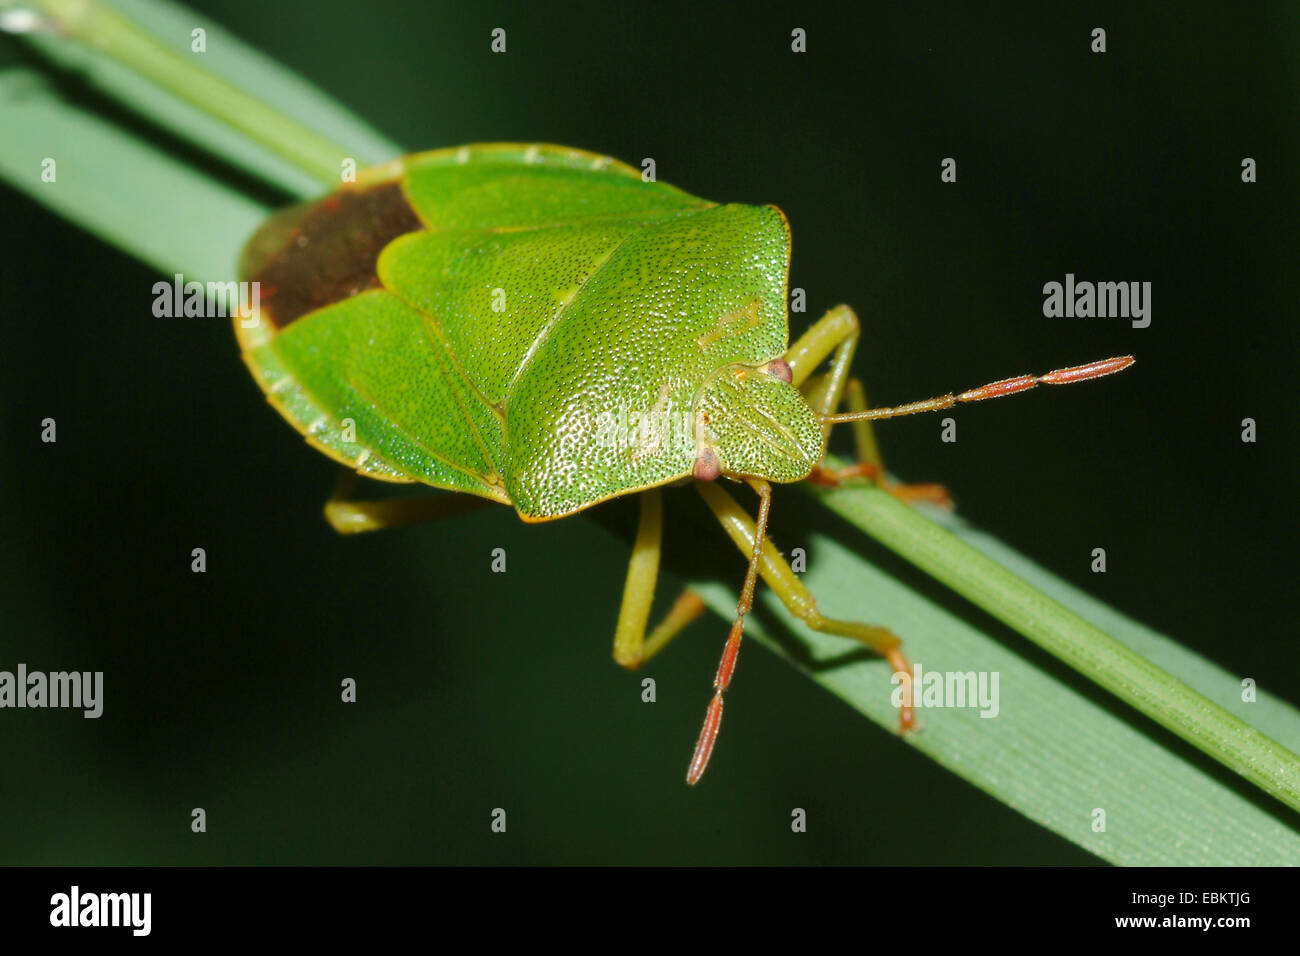 grünes Schild Bug, gemeinsamen grünen Schild Bug (Palomena Prasina), sitzt auf einem Blatt, Deutschland Stockfoto